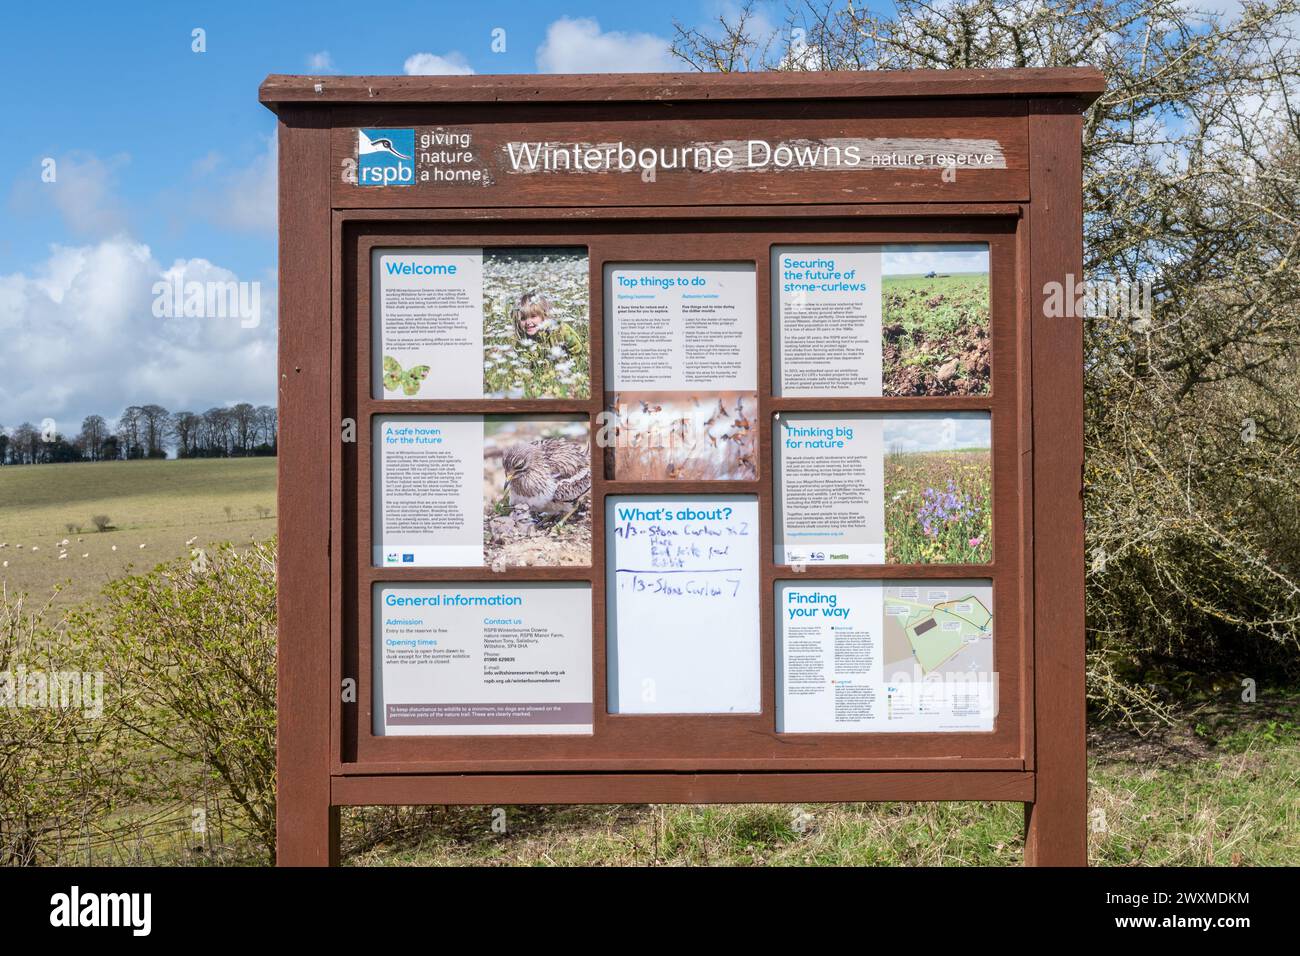 RSPB Winterbourne Downs Naturschutzgebiet in Spring, Wiltshire, England, Großbritannien. Informationstafel am Eingang zum Reservat. Stockfoto